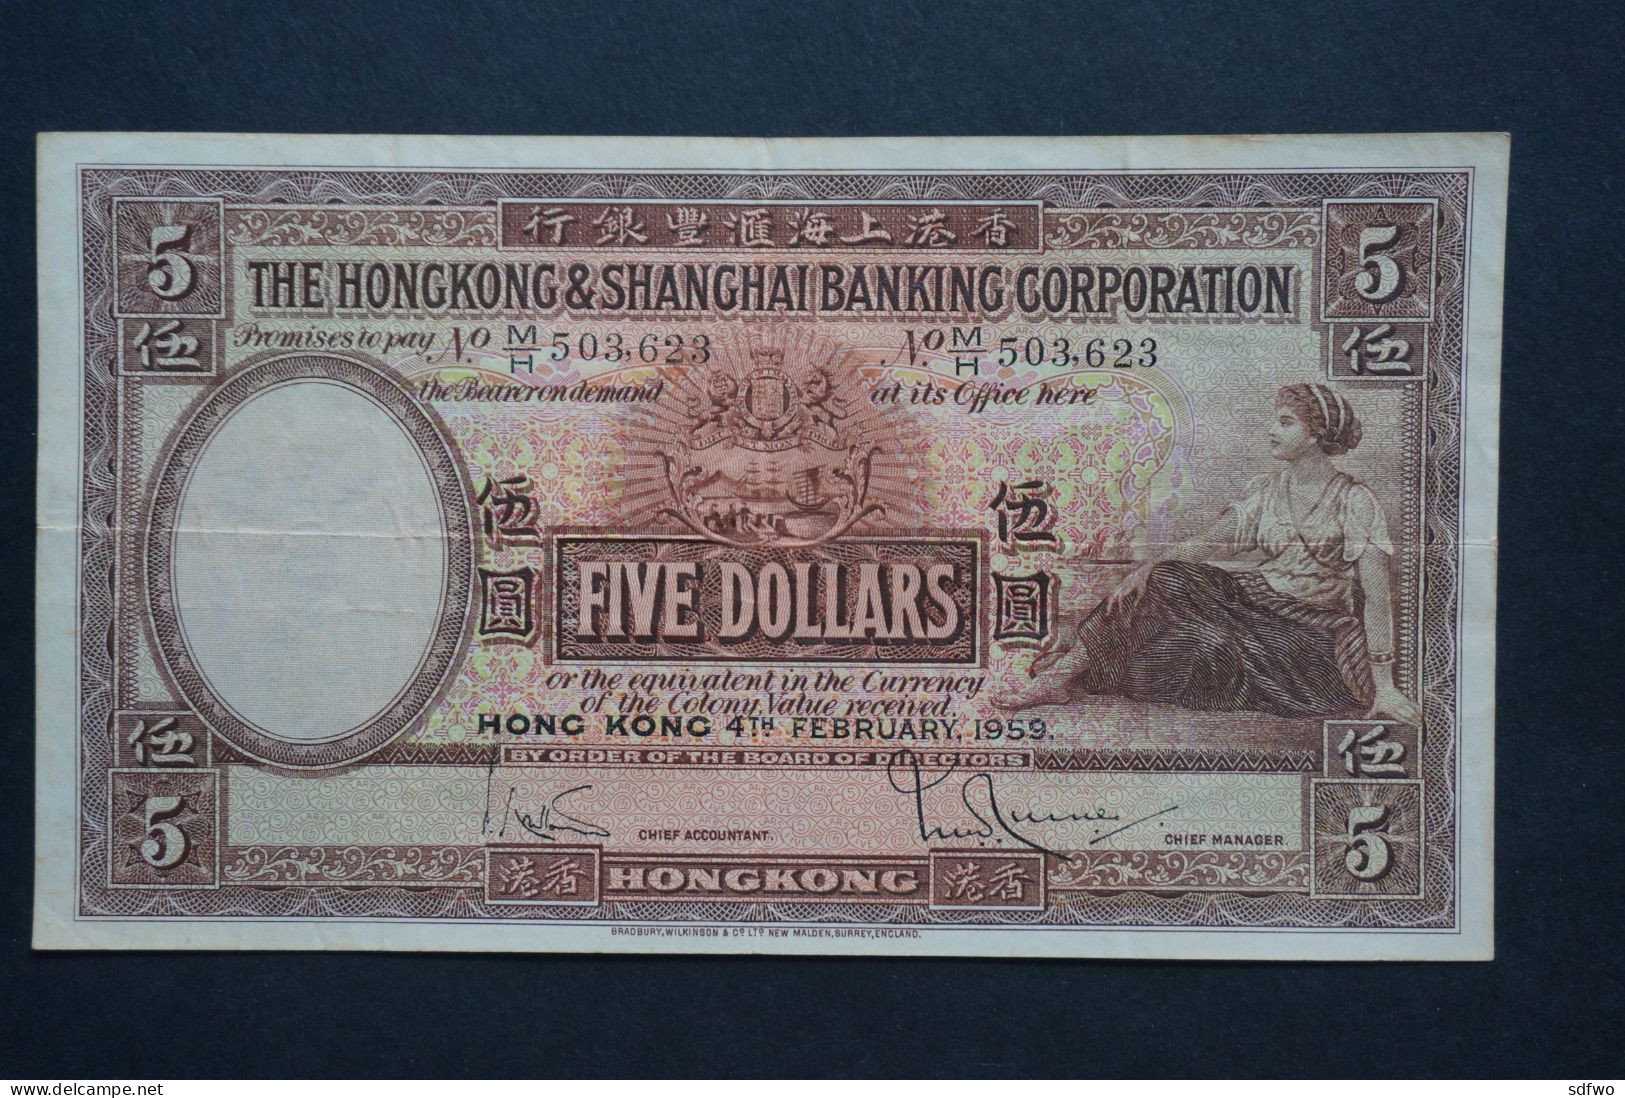 (Tv) 1959 HONG KONG OLD ISSUE - HSBC BANKNOTE 5 DOLLARS #M/H 503,623 - Hong Kong